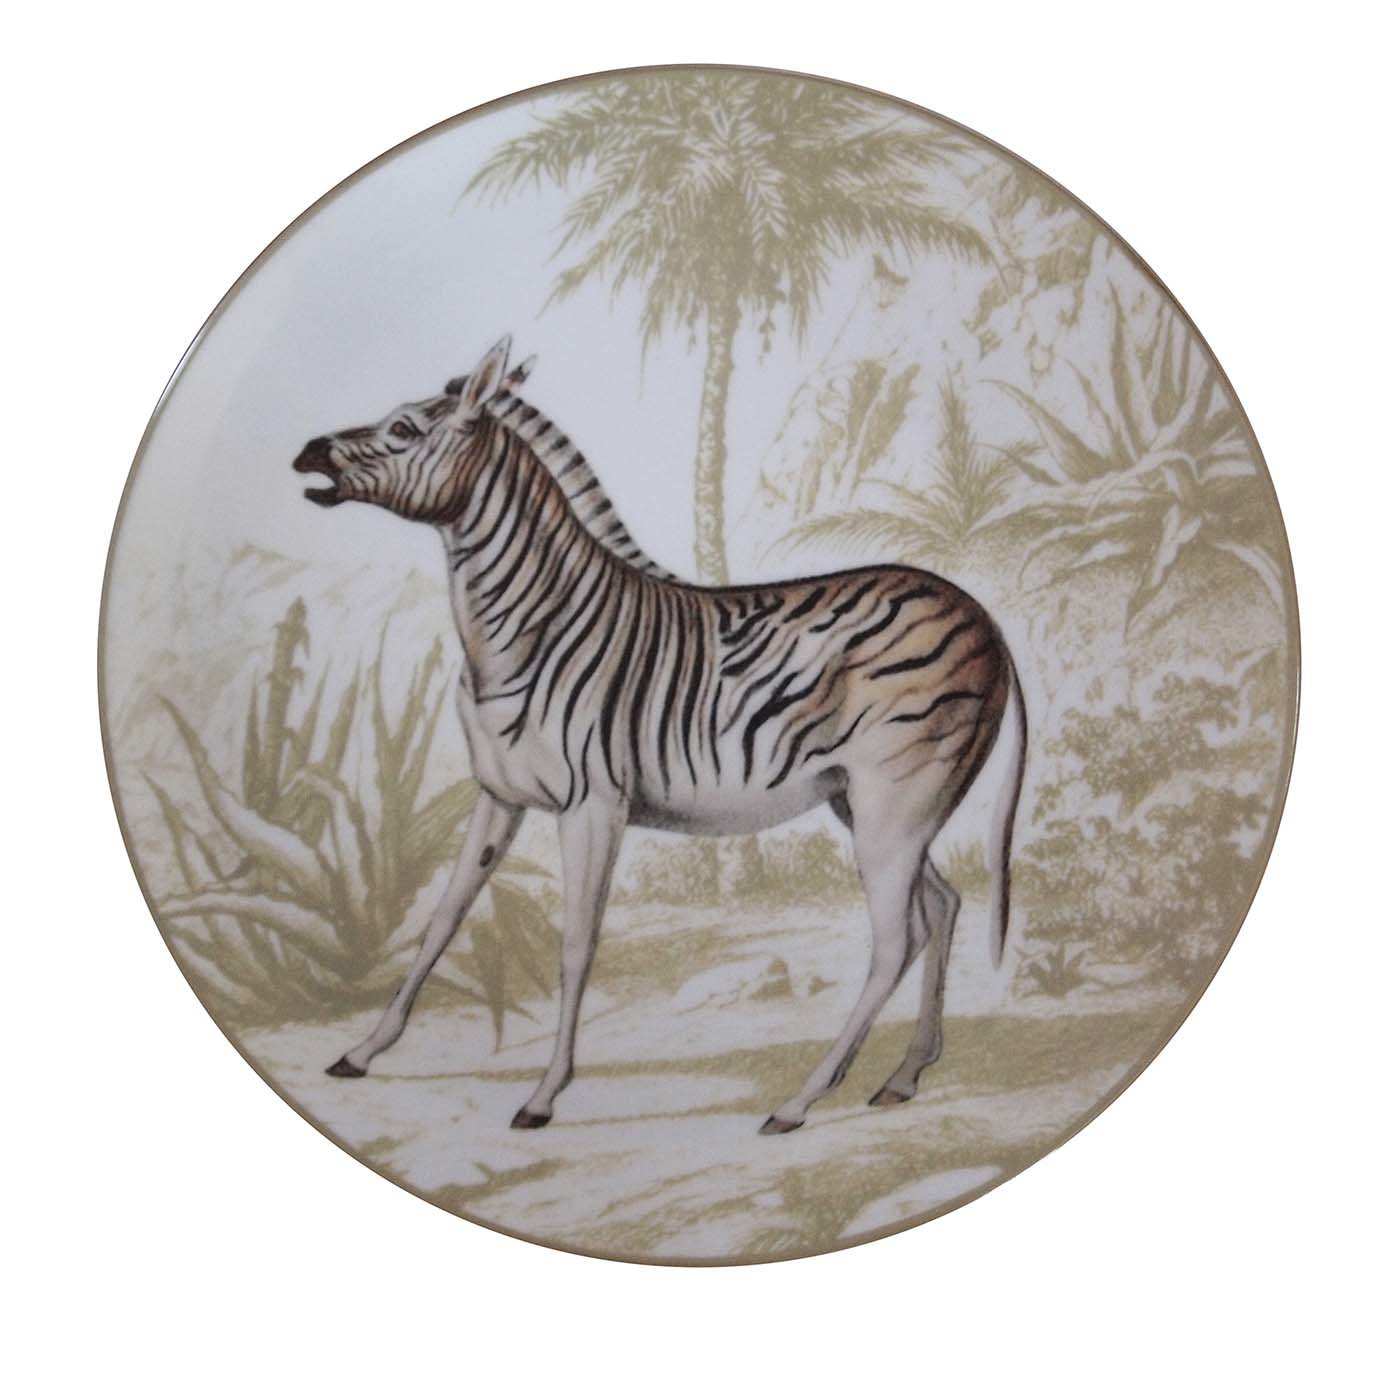 Ottomane Zebra Plate - Main view